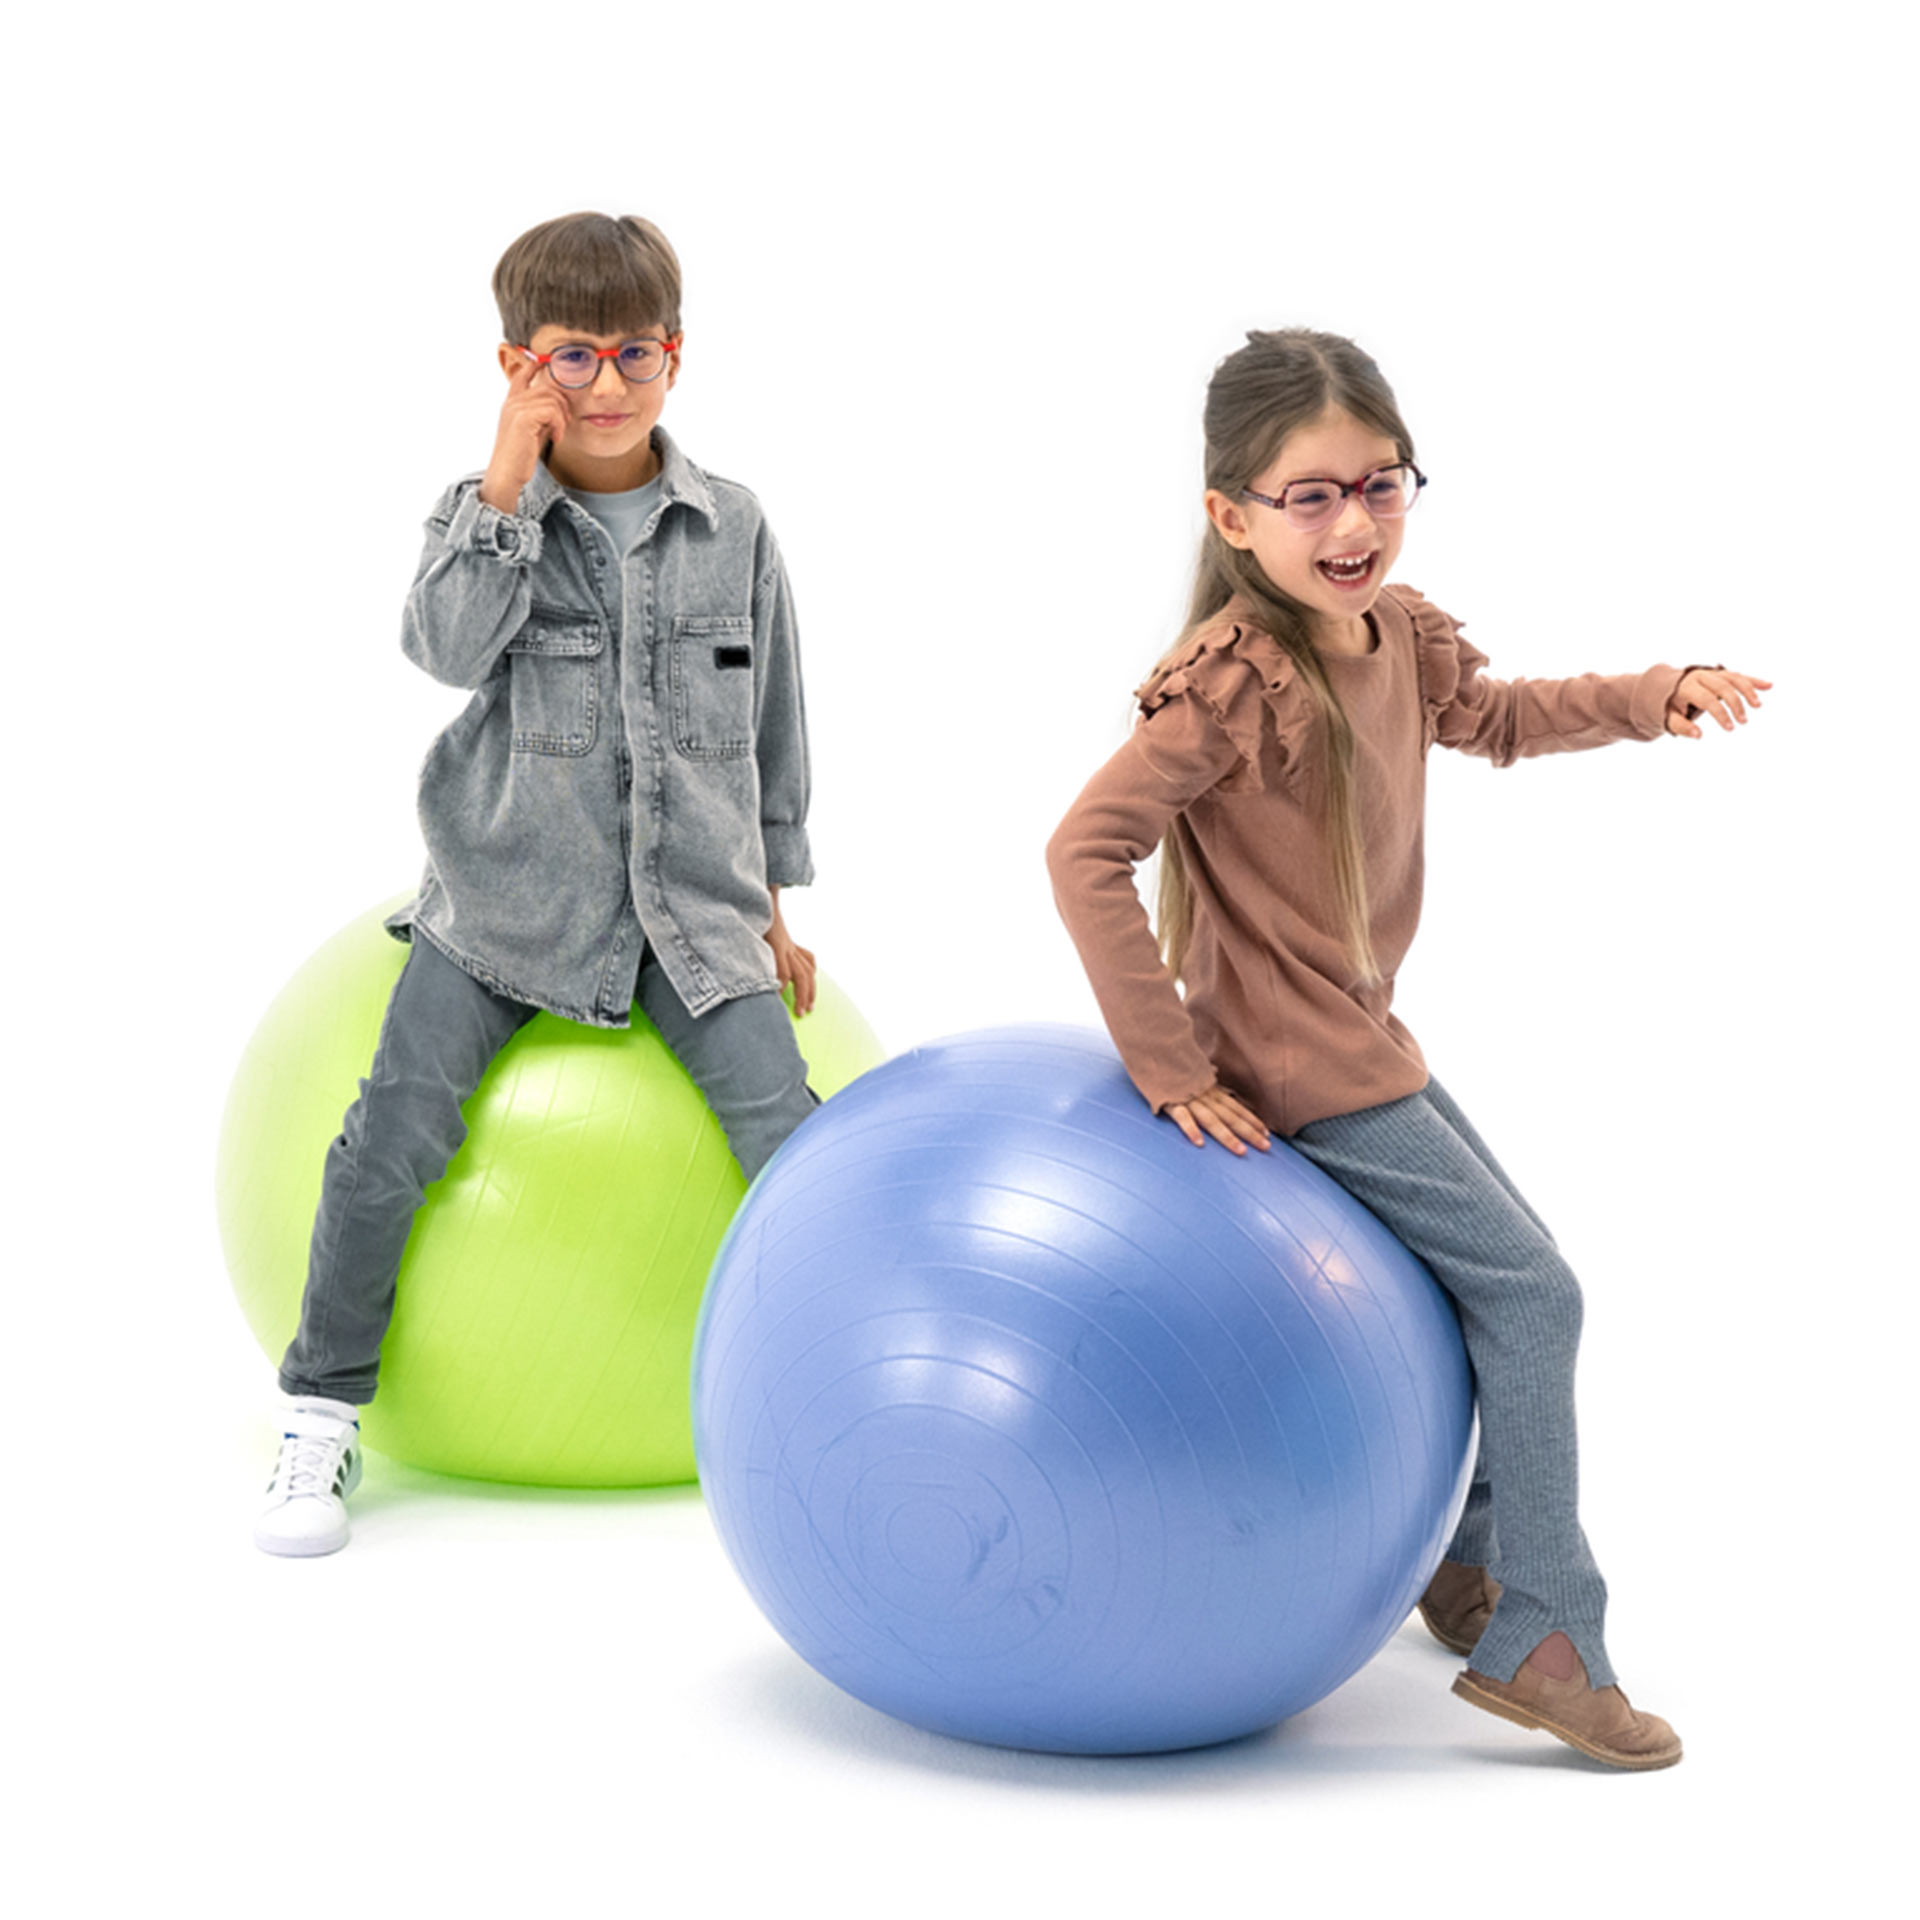 Un garçon et une fille, tous deux portant des lunettes, s’amusent sur des ballons de gymnastique.